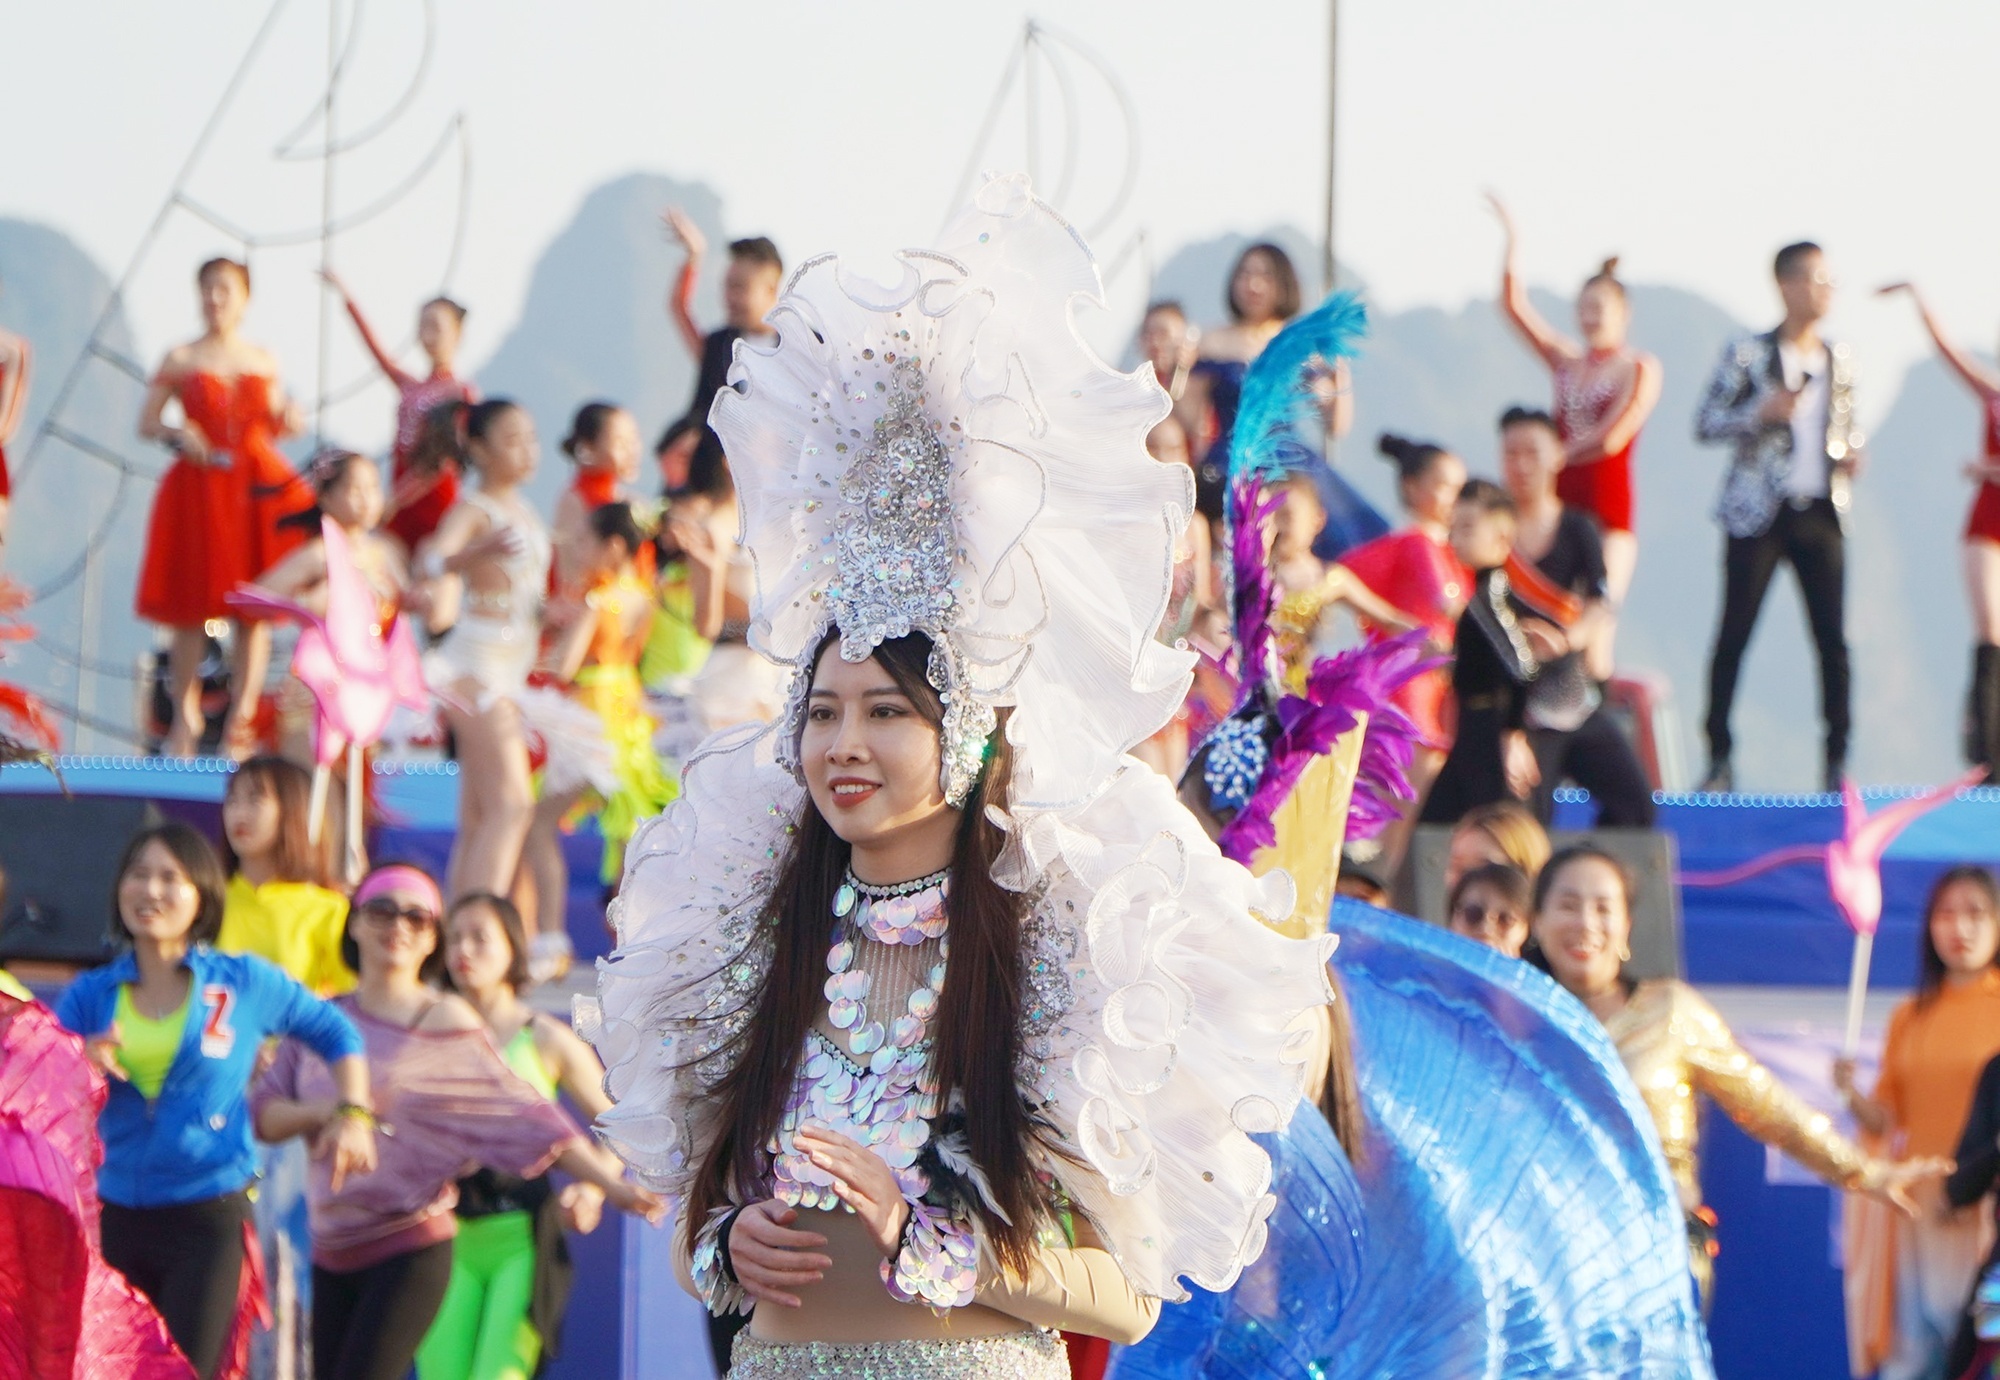 Carnaval mùa đông Hạ Long - sản phẩm du lịch ‘trái mùa’ của Quảng Ninh - ảnh 1